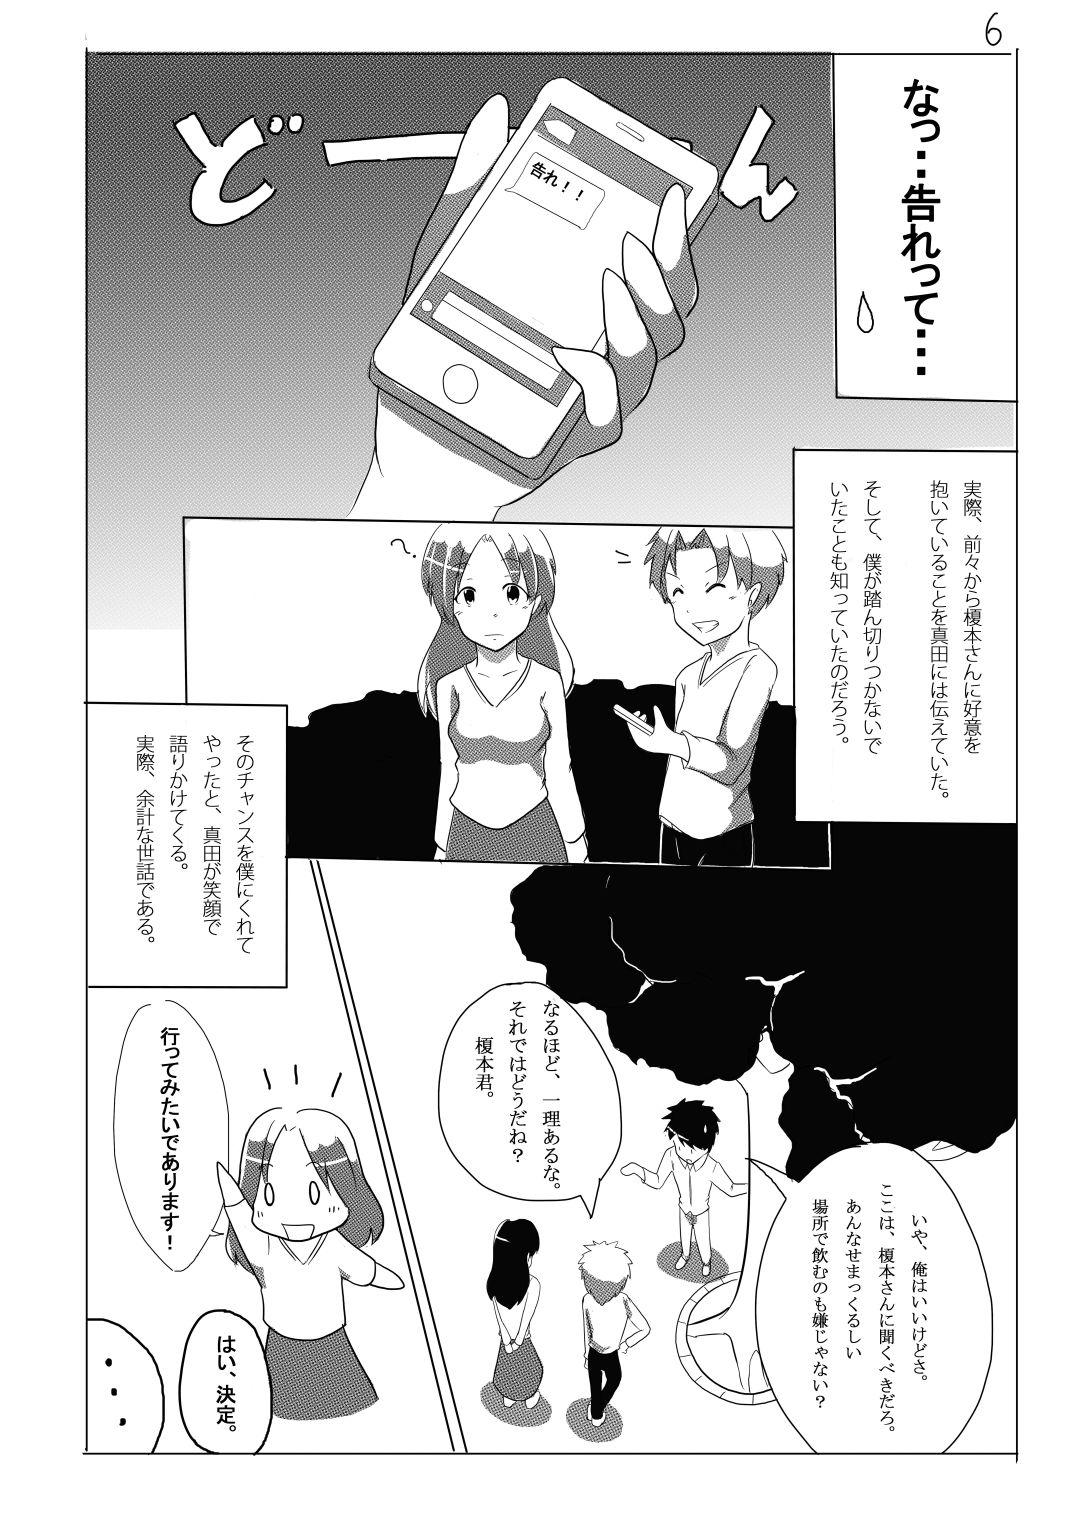 Muscular Meta-Koi!  - Page 6